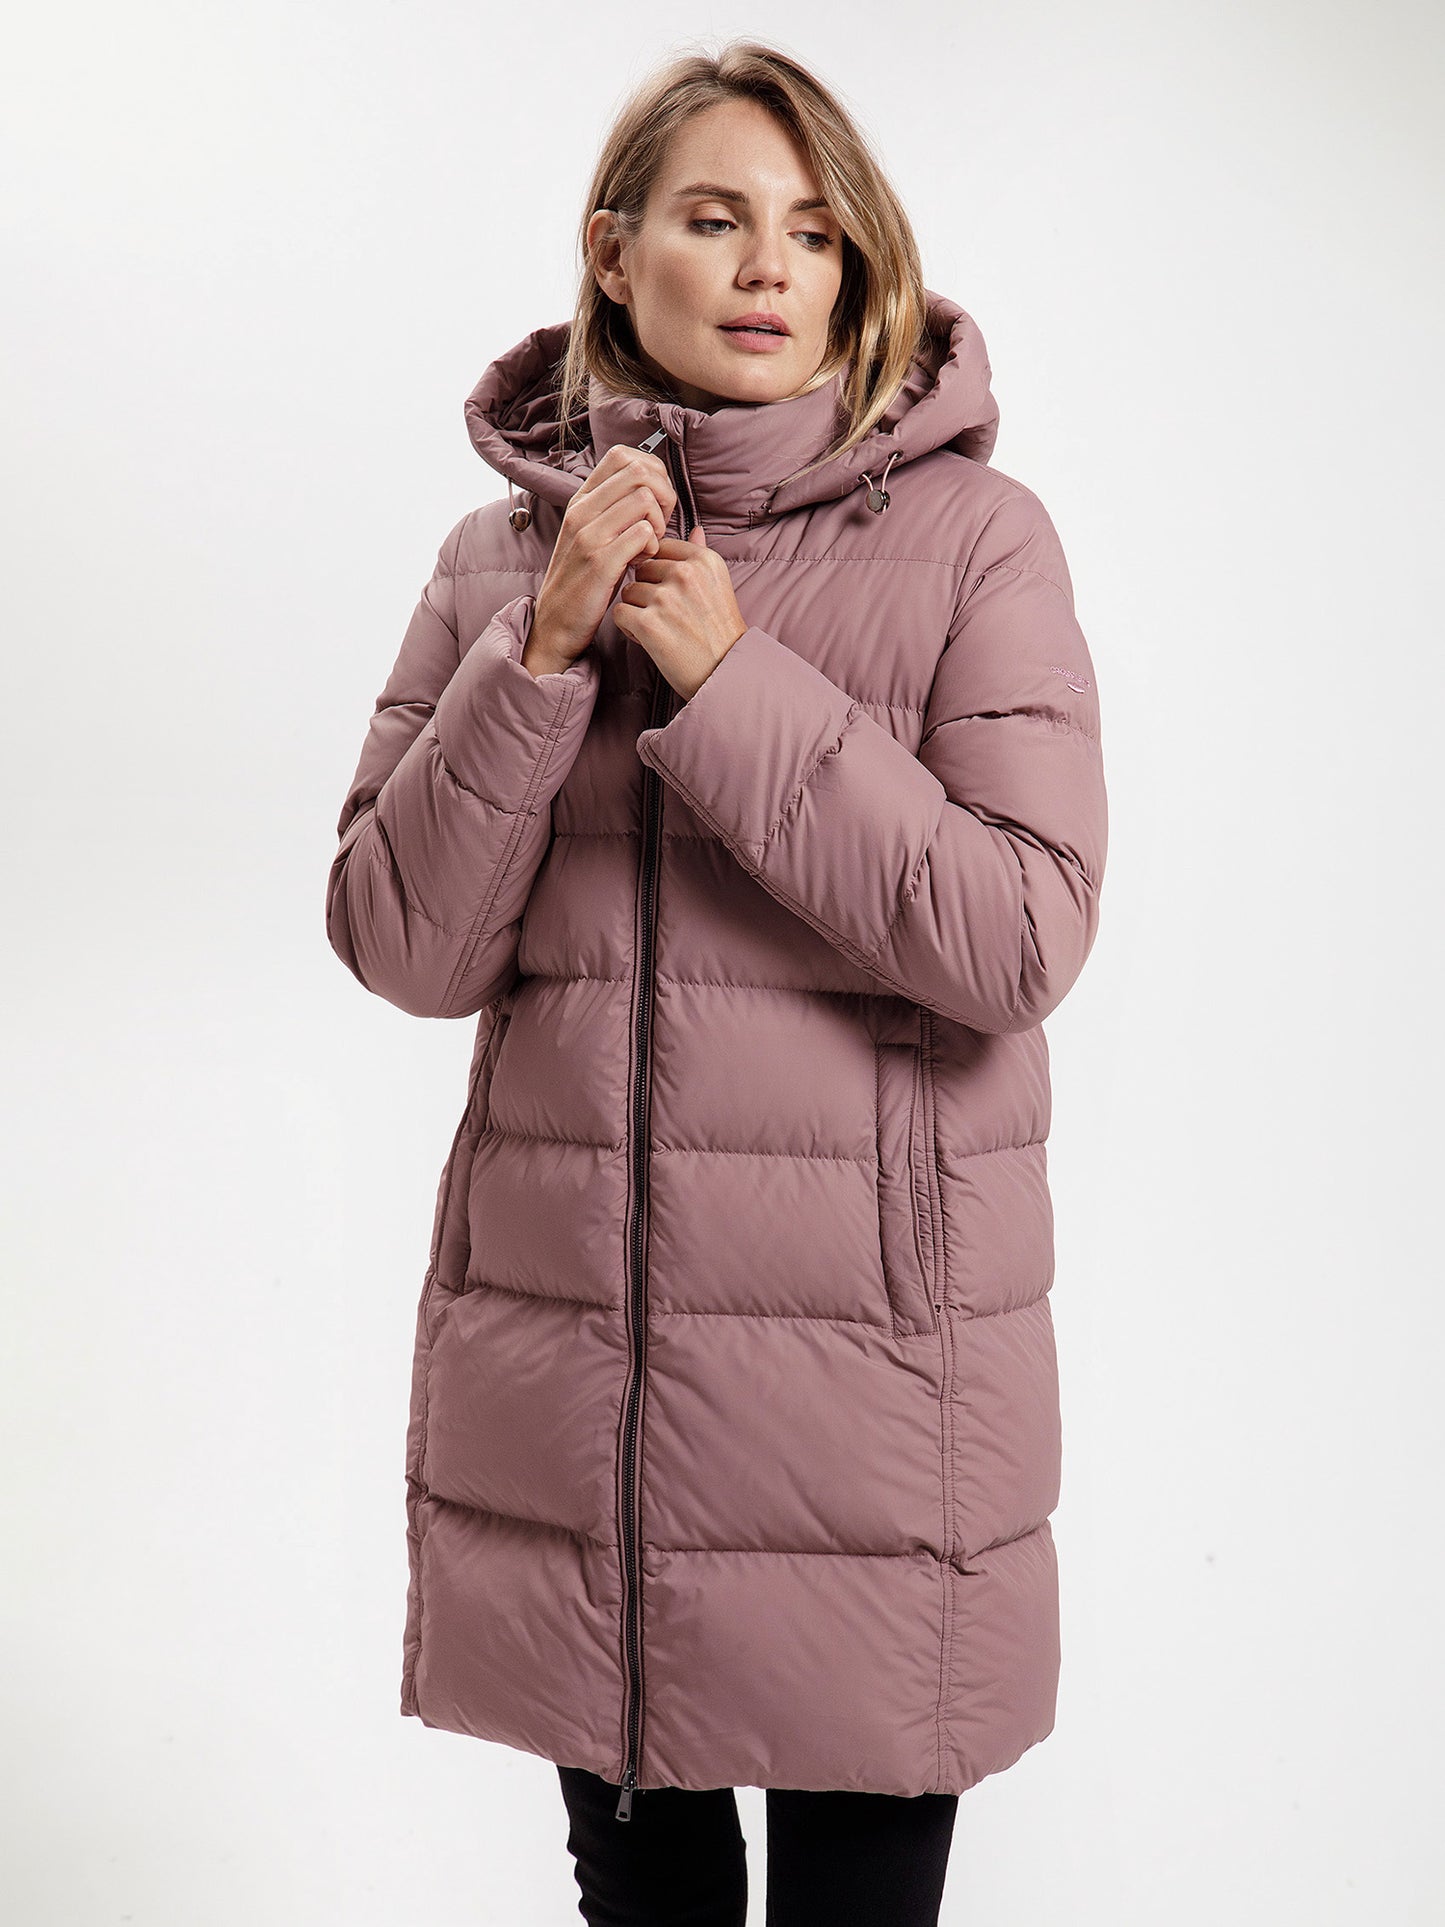 Women's regular short coat in pink